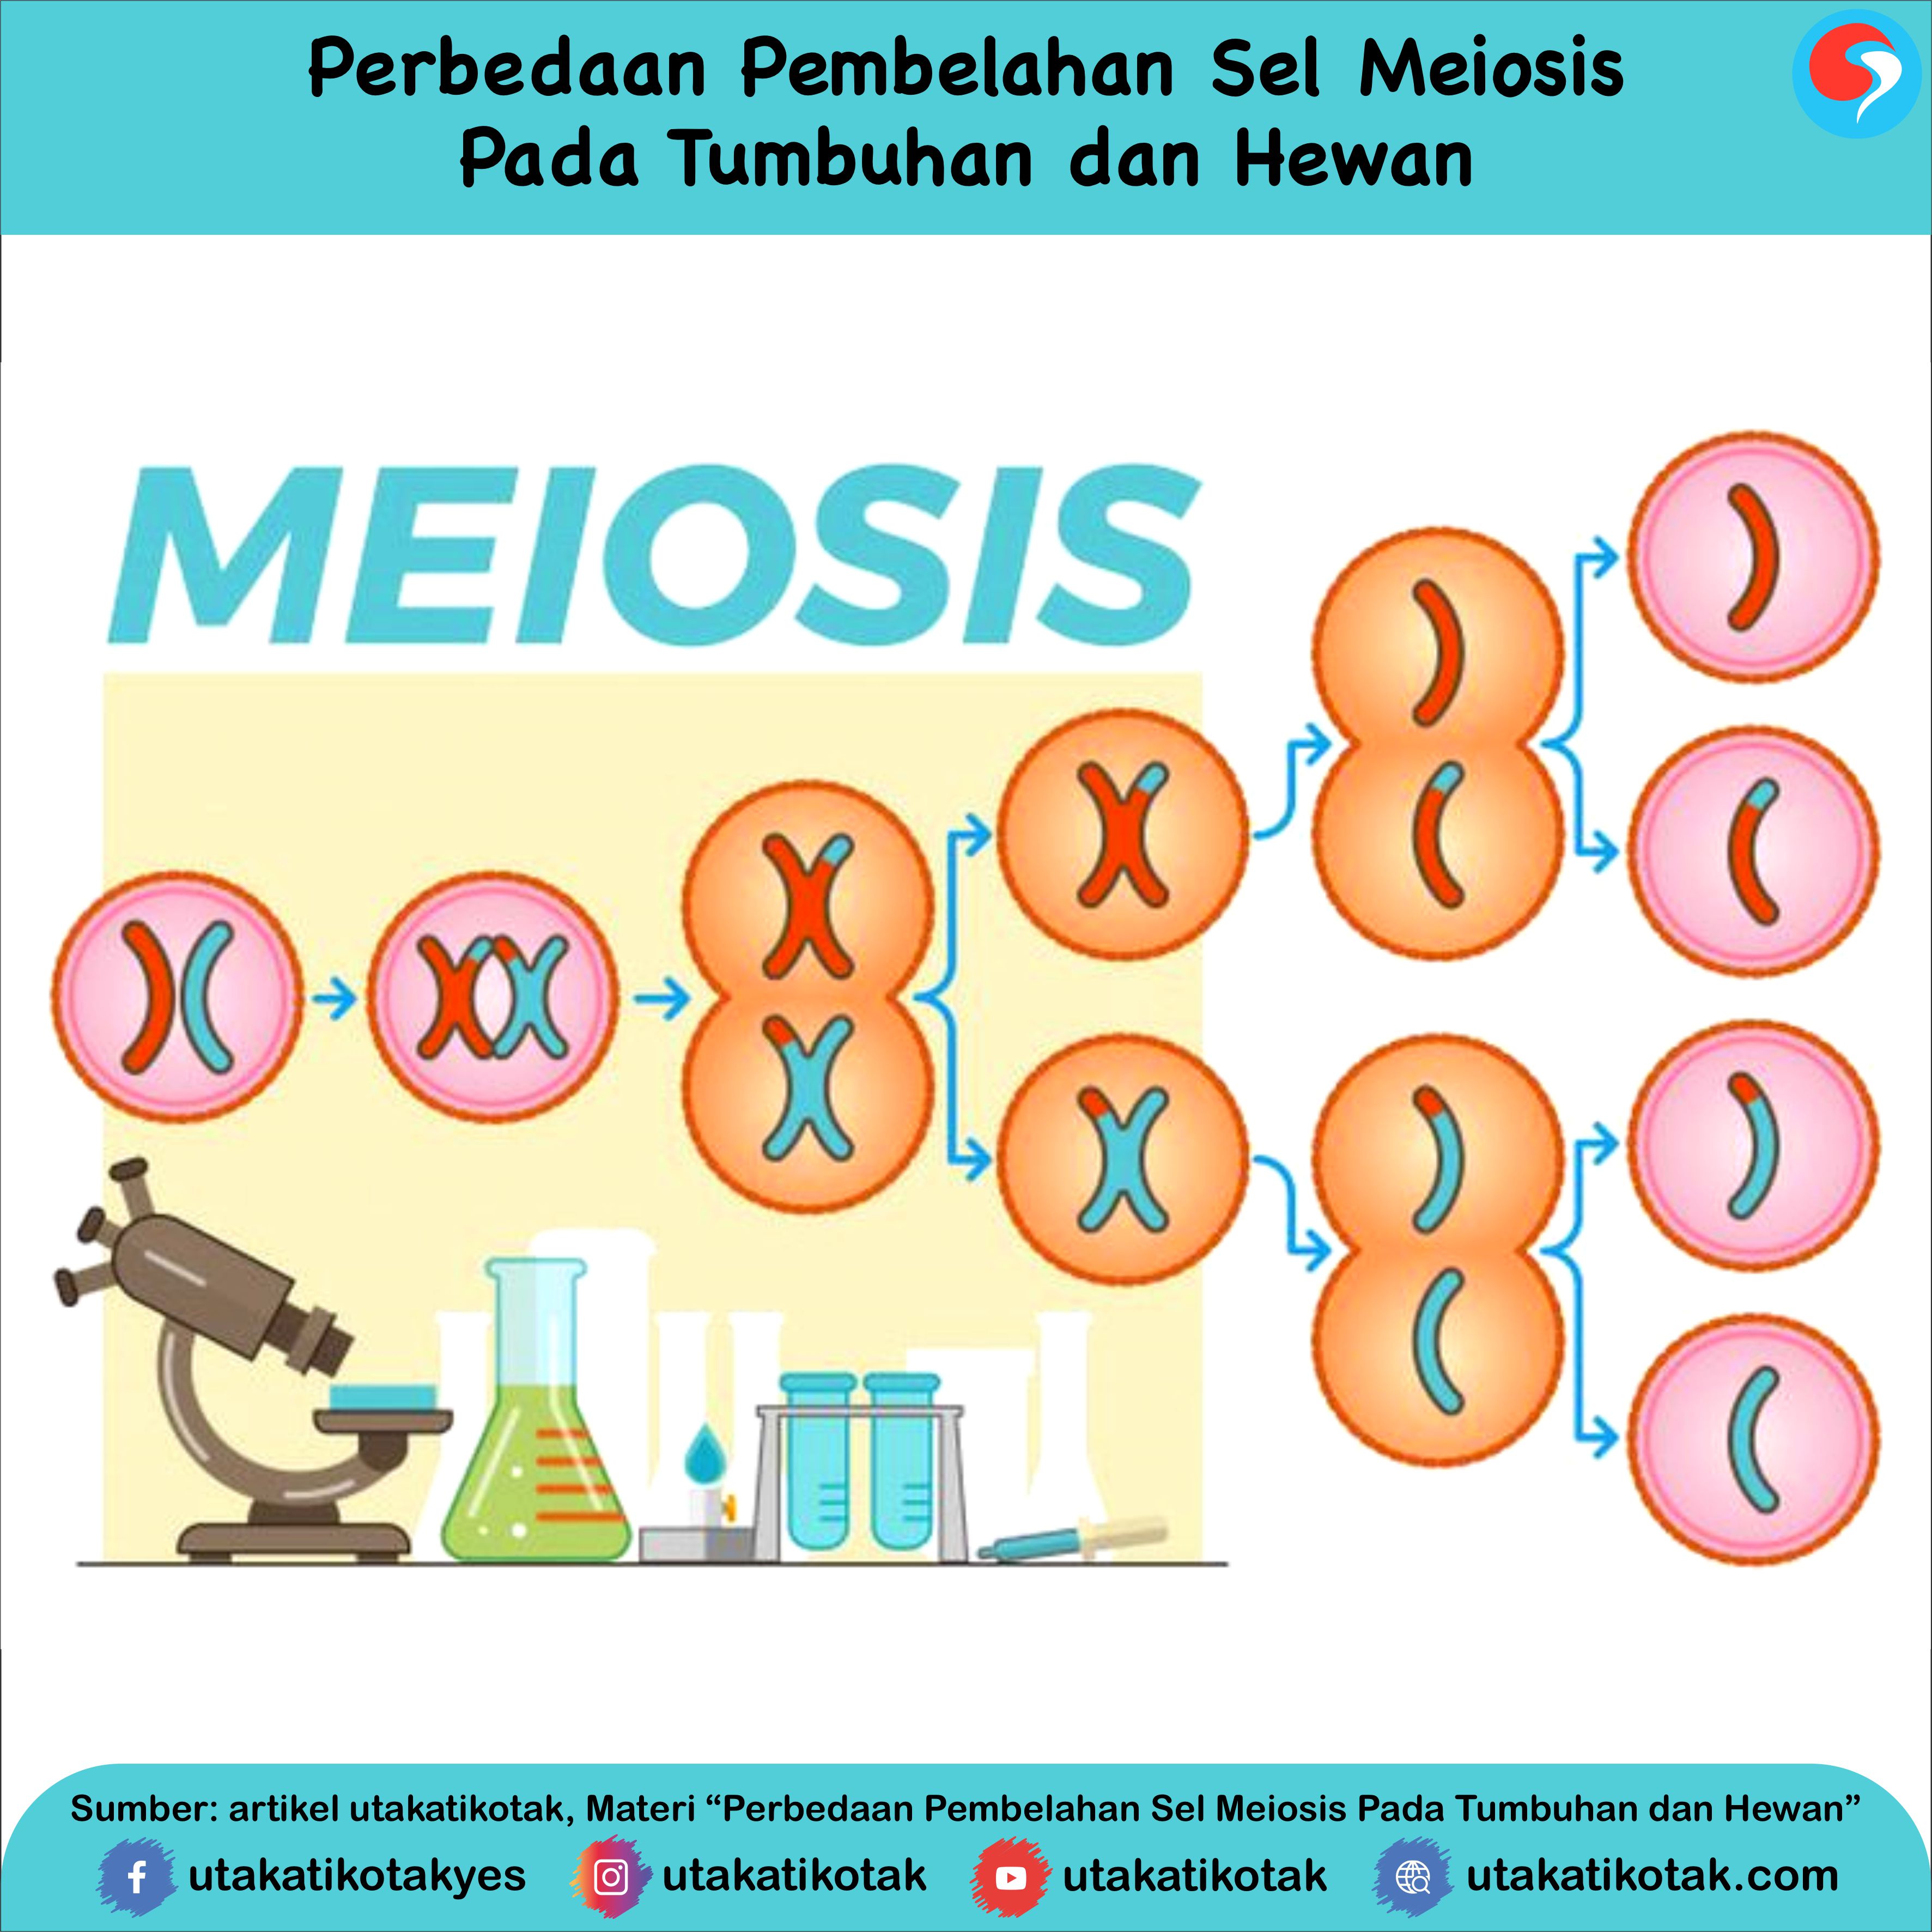 Yang ii meiosis adalah terjadi peristiwa pada profase Reproduksi Sel